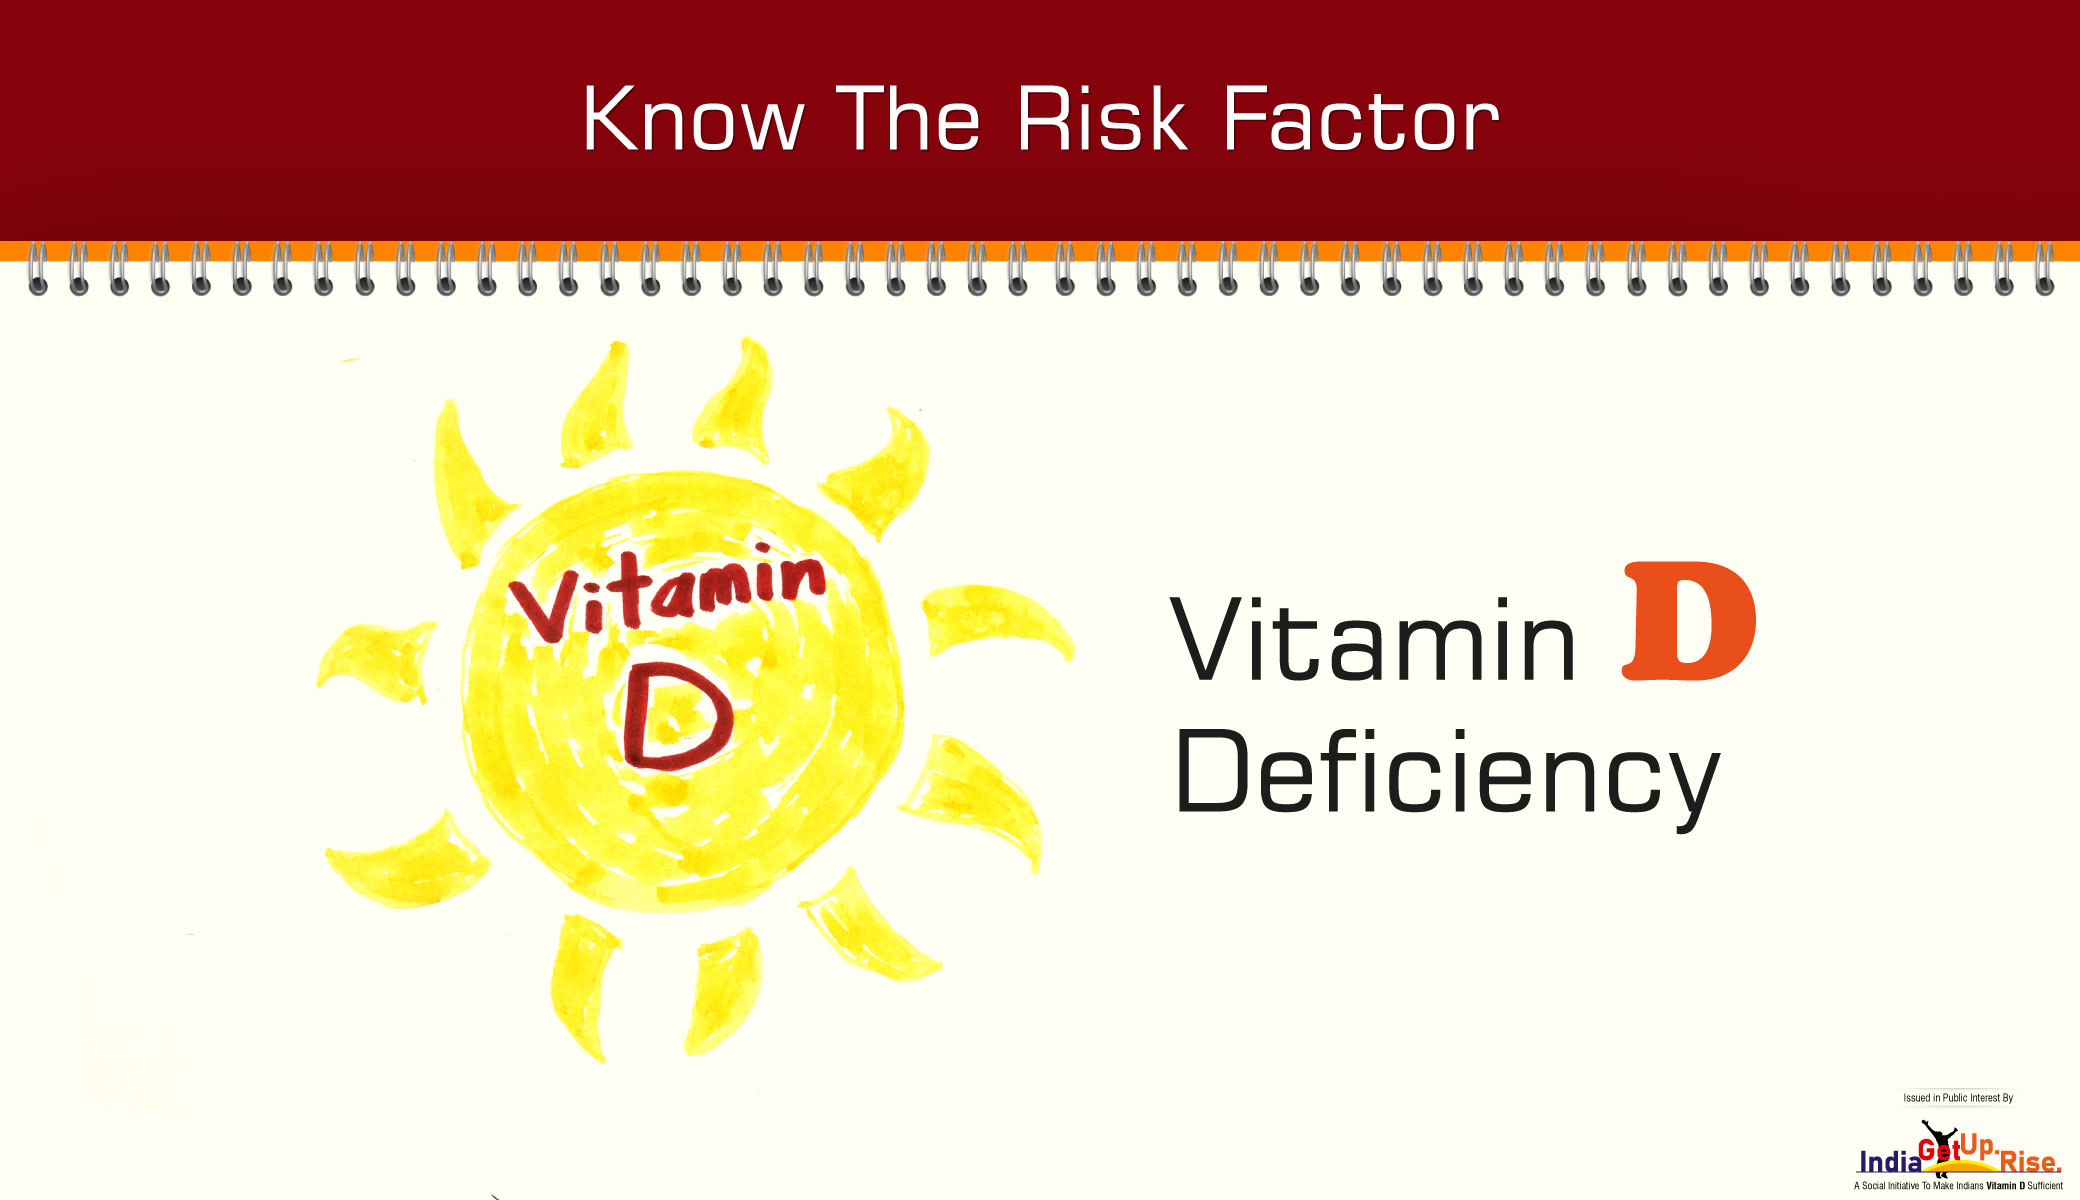 Vitamin D Deficiency risk